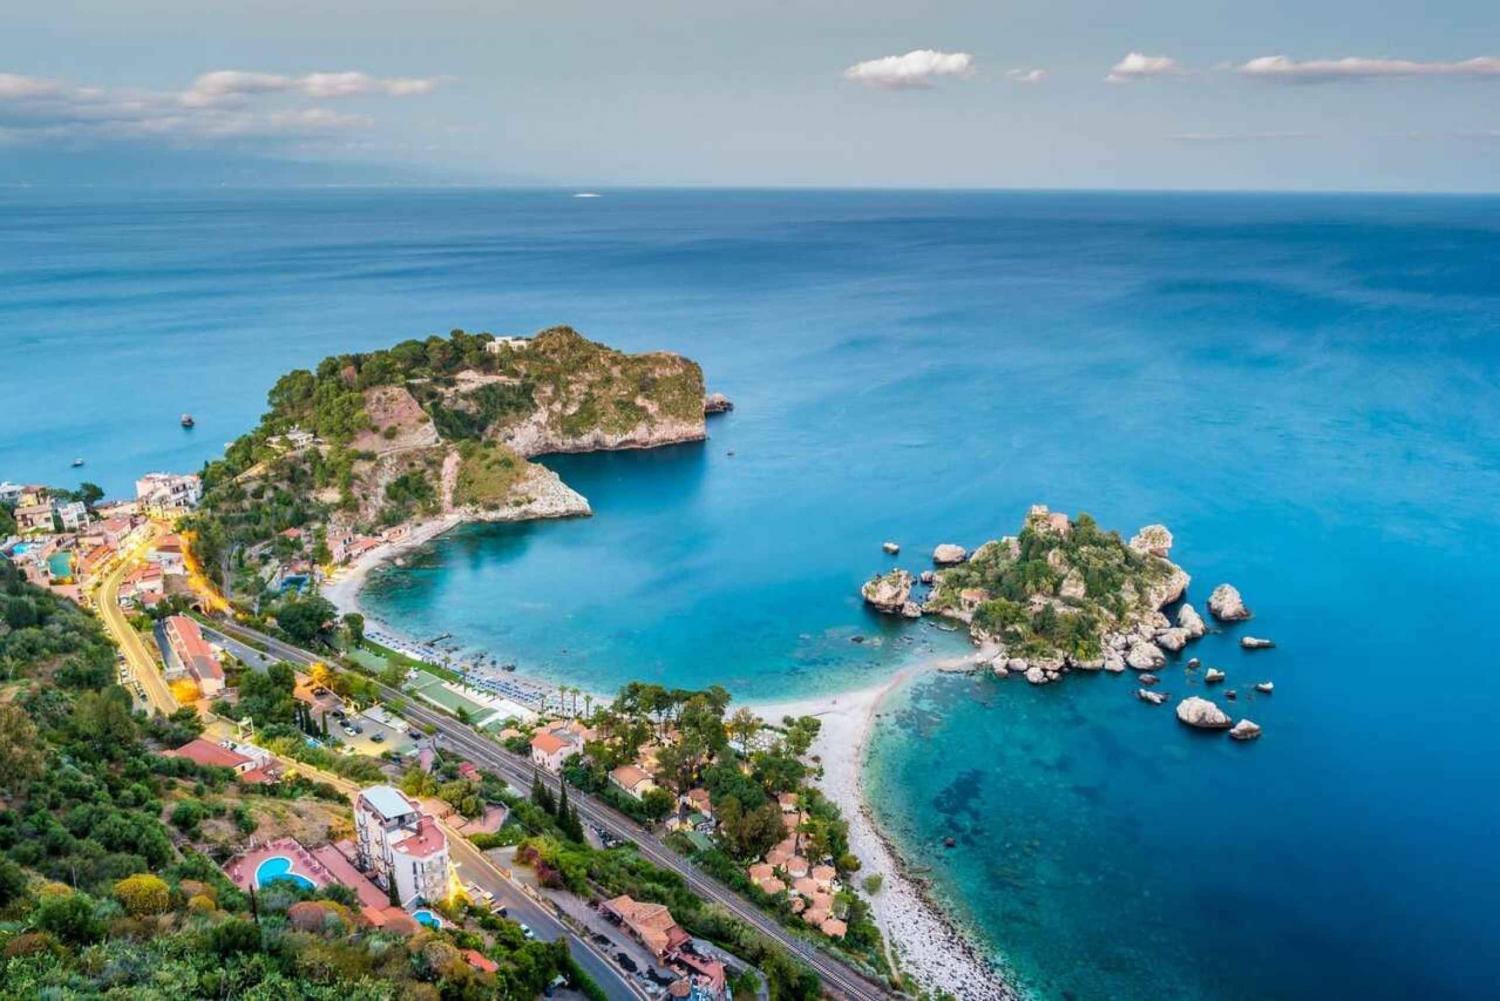 Taormina: Tour in barca con aperitivo all'Isola bella